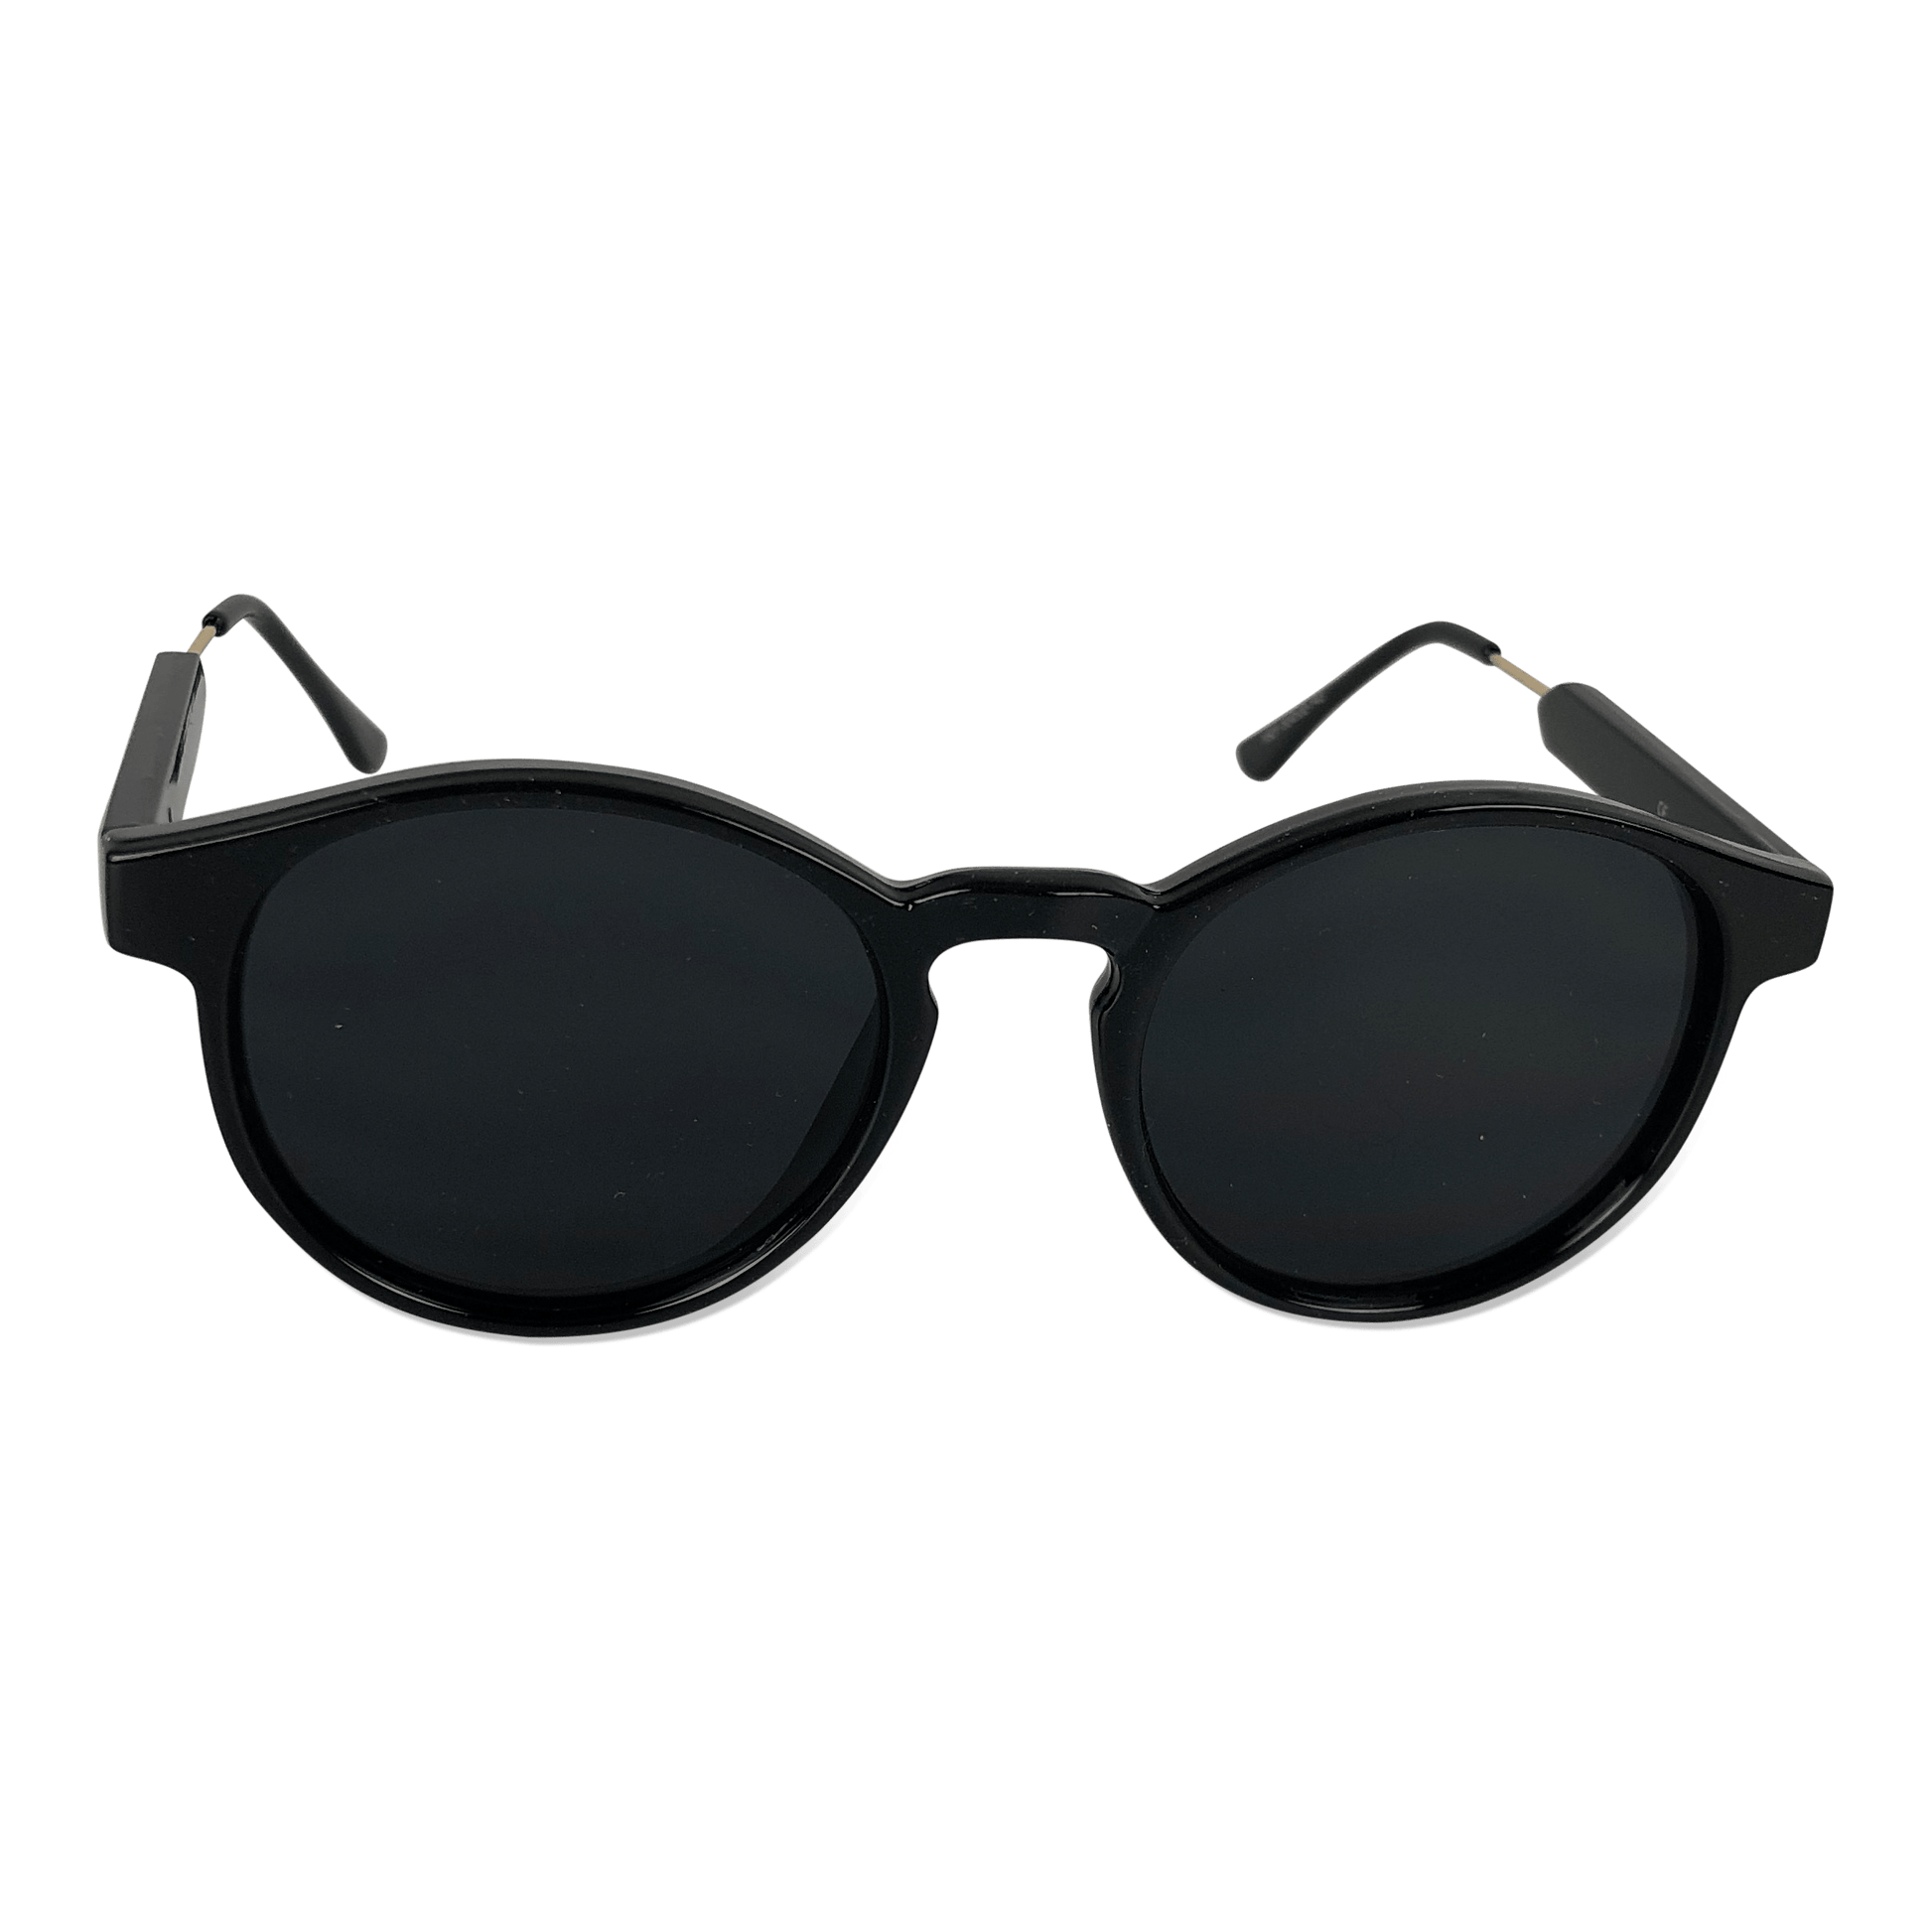 Køb billige solbriller | Stort 😎 – OtherStuff